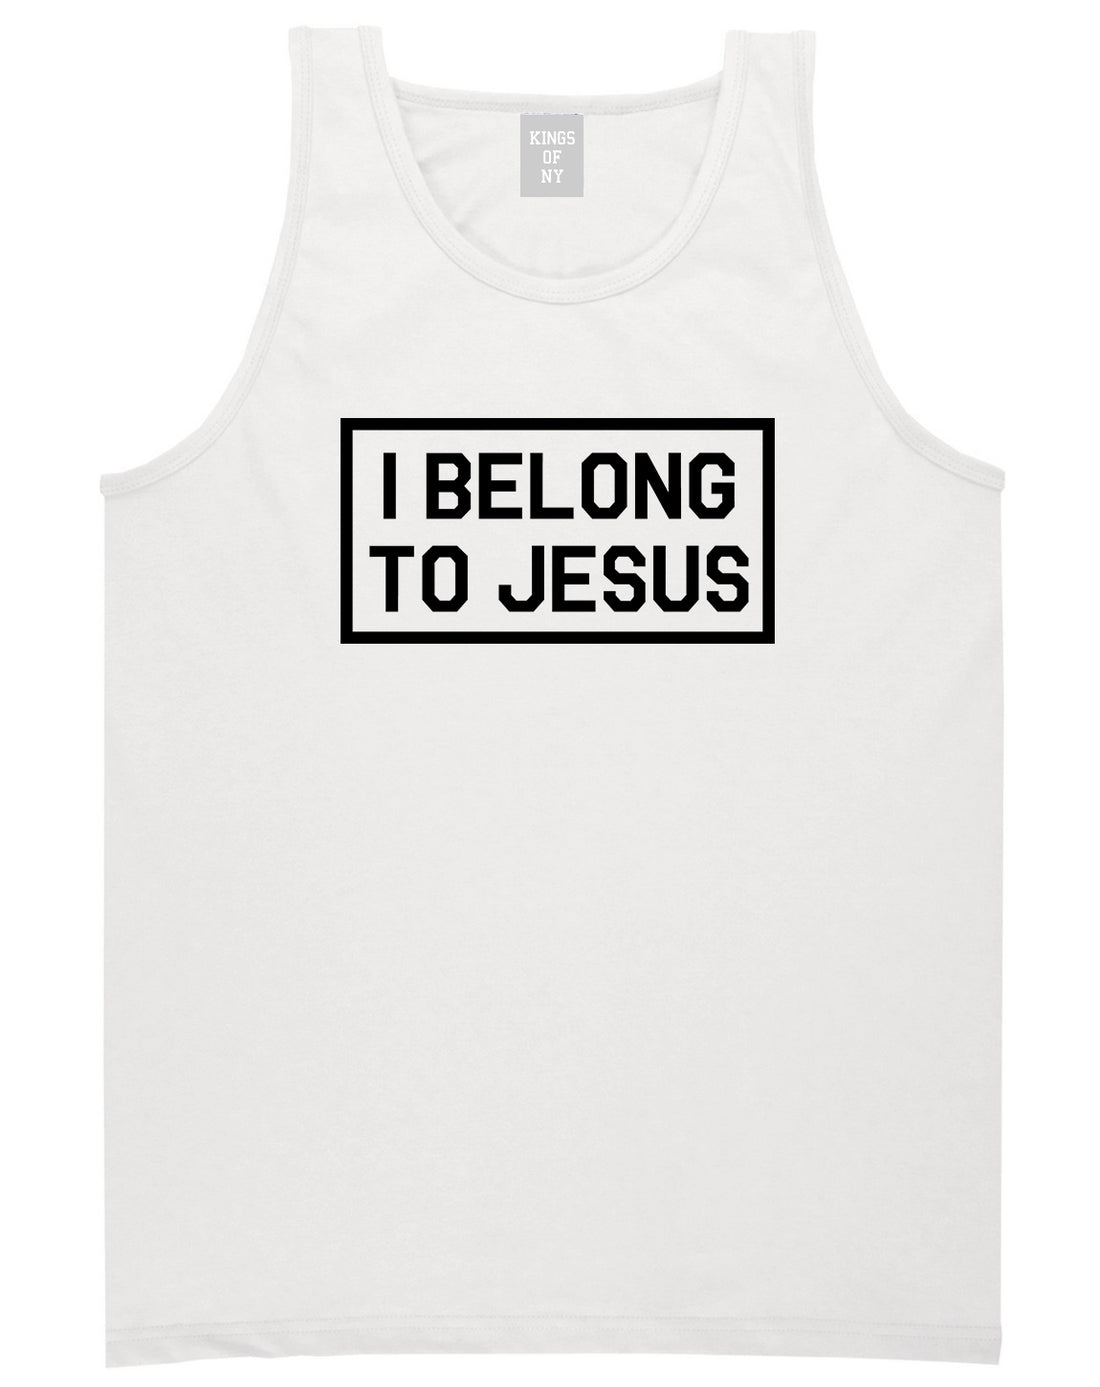 I Belong To Jesus Mens Tank Top Shirt White